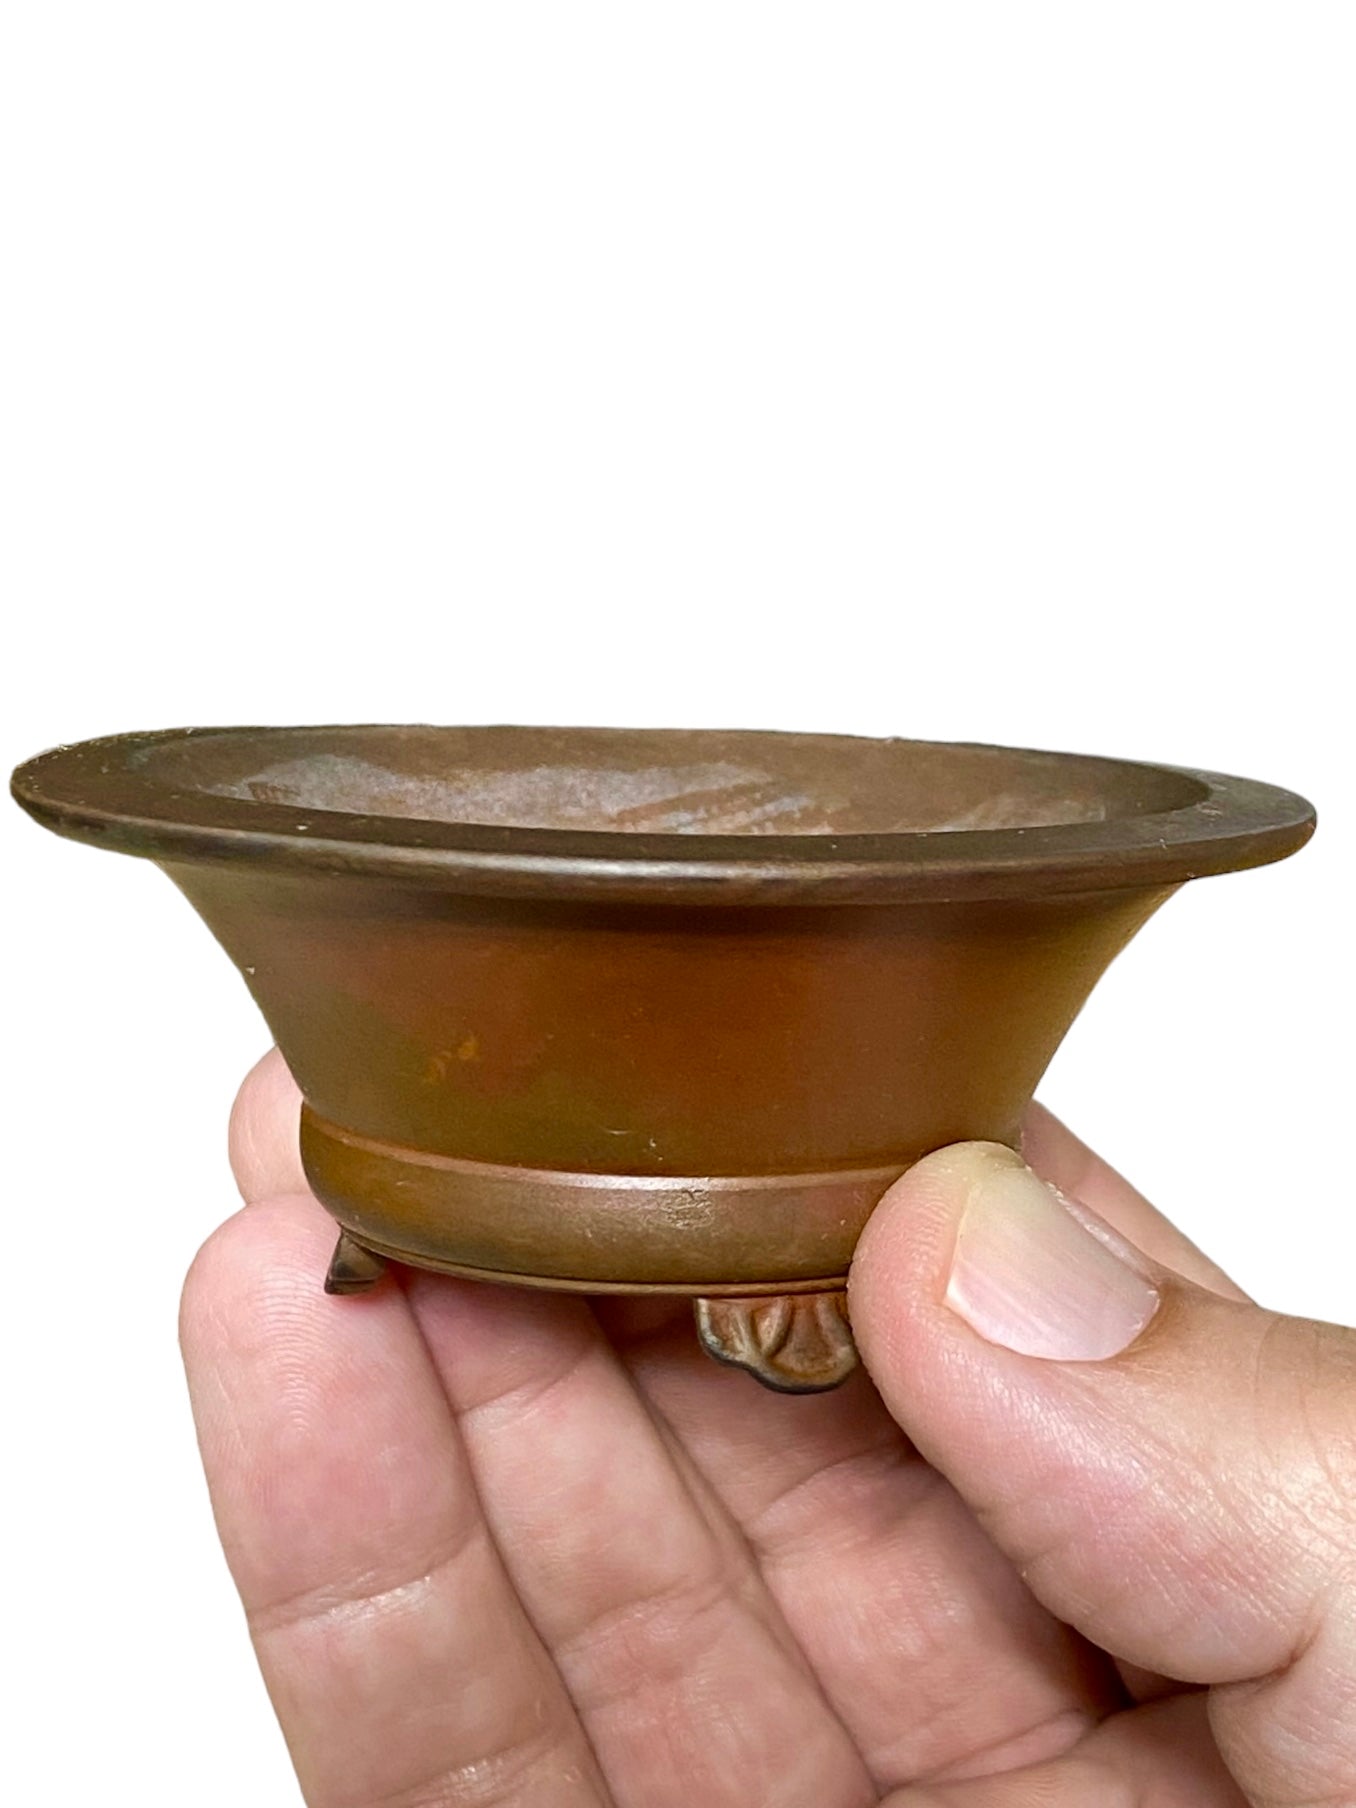 Senkouen - Quite Old Footed Bowl Bonsai or Accent Pot